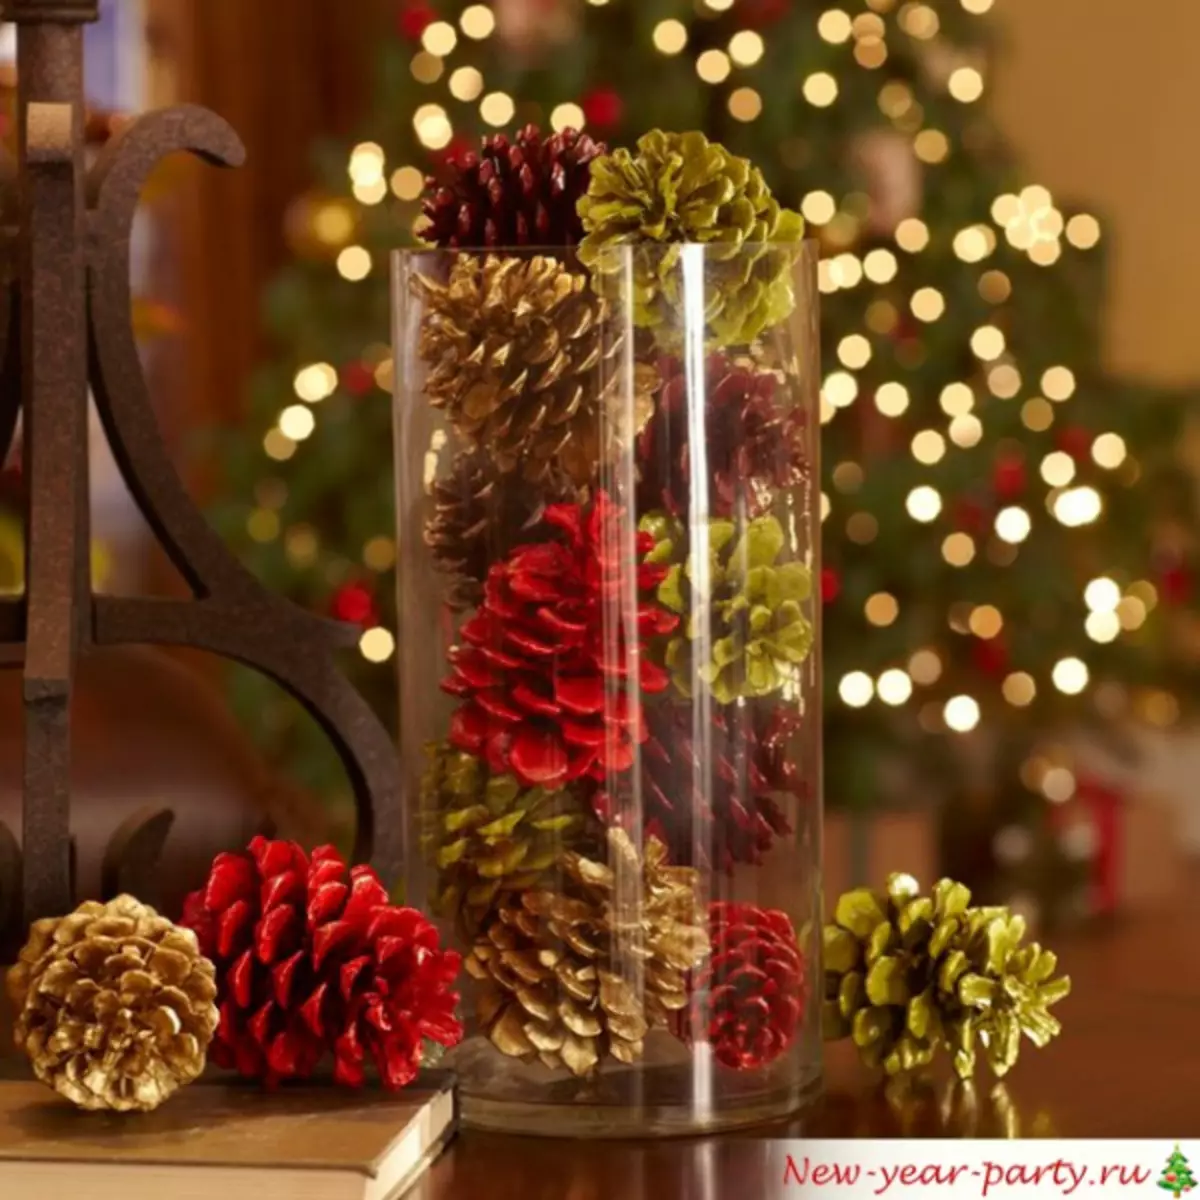 クリスマスツリーに手を持つ新年の装飾と写真とボトルに